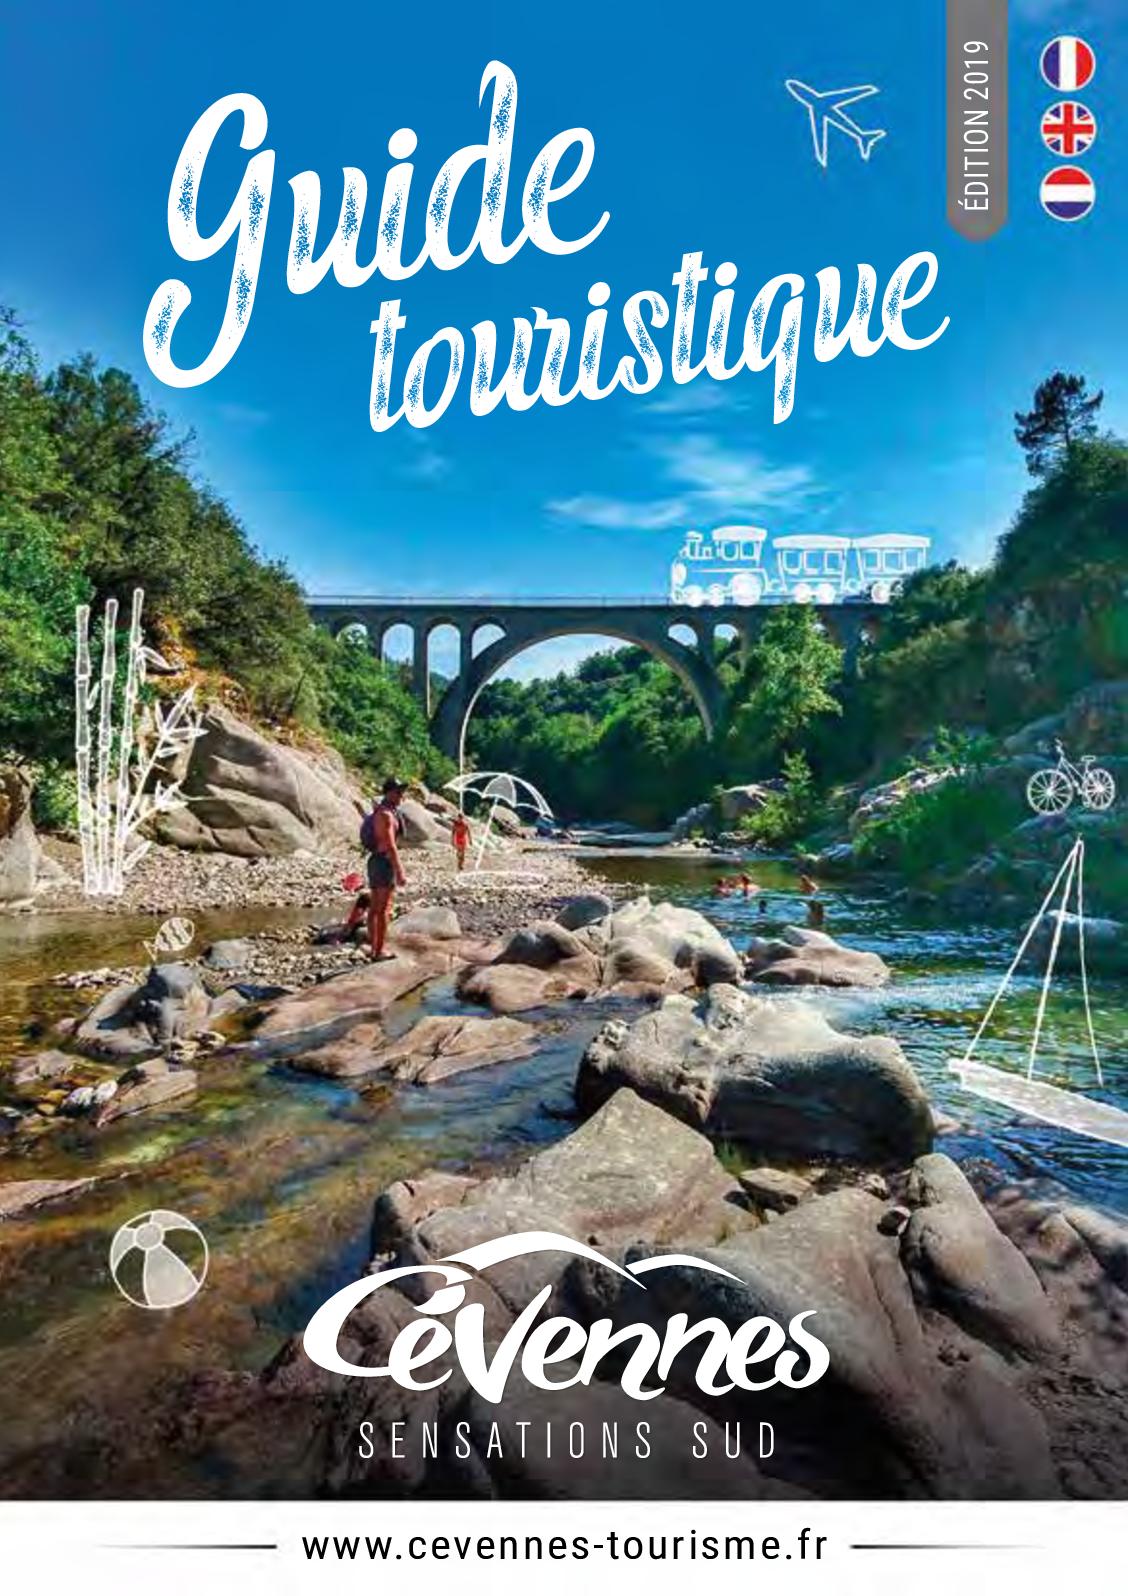 Magasin Canapé Montpellier Inspirant Calaméo Guide touristique Cévennes tourisme 2019